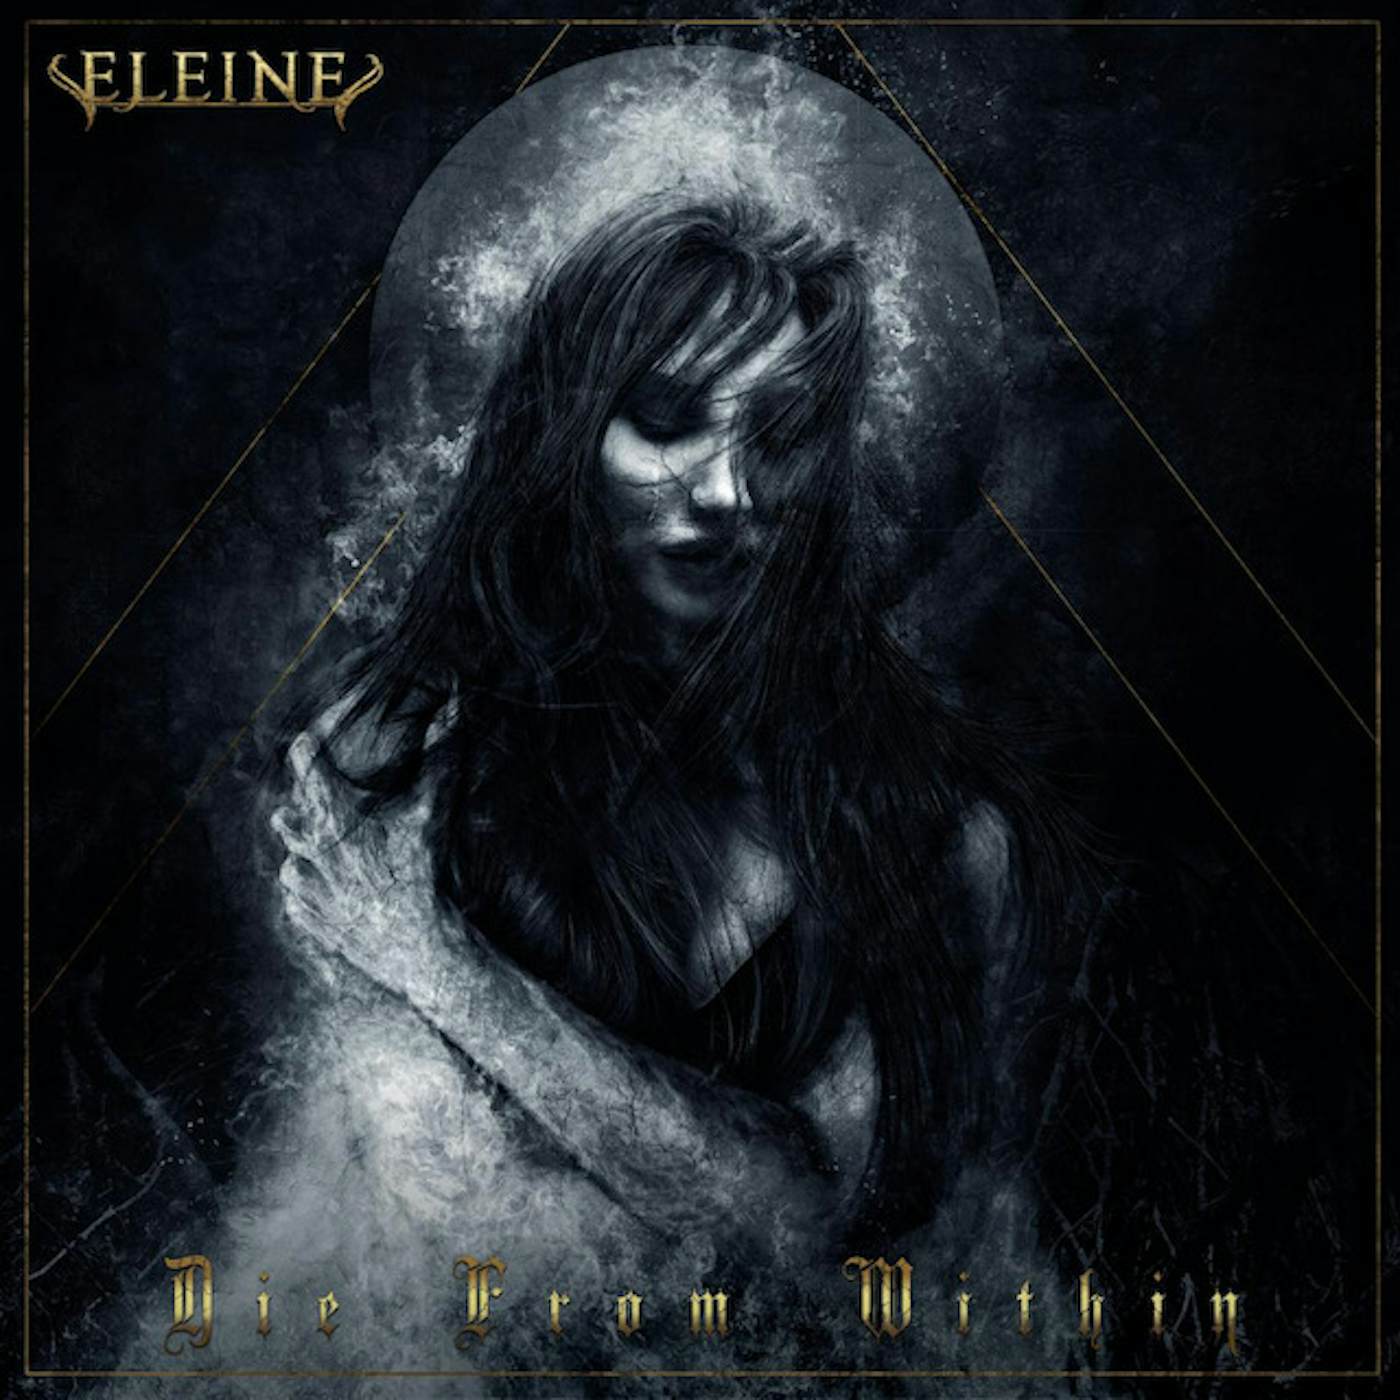 Eleine Die From Within Vinyl Record